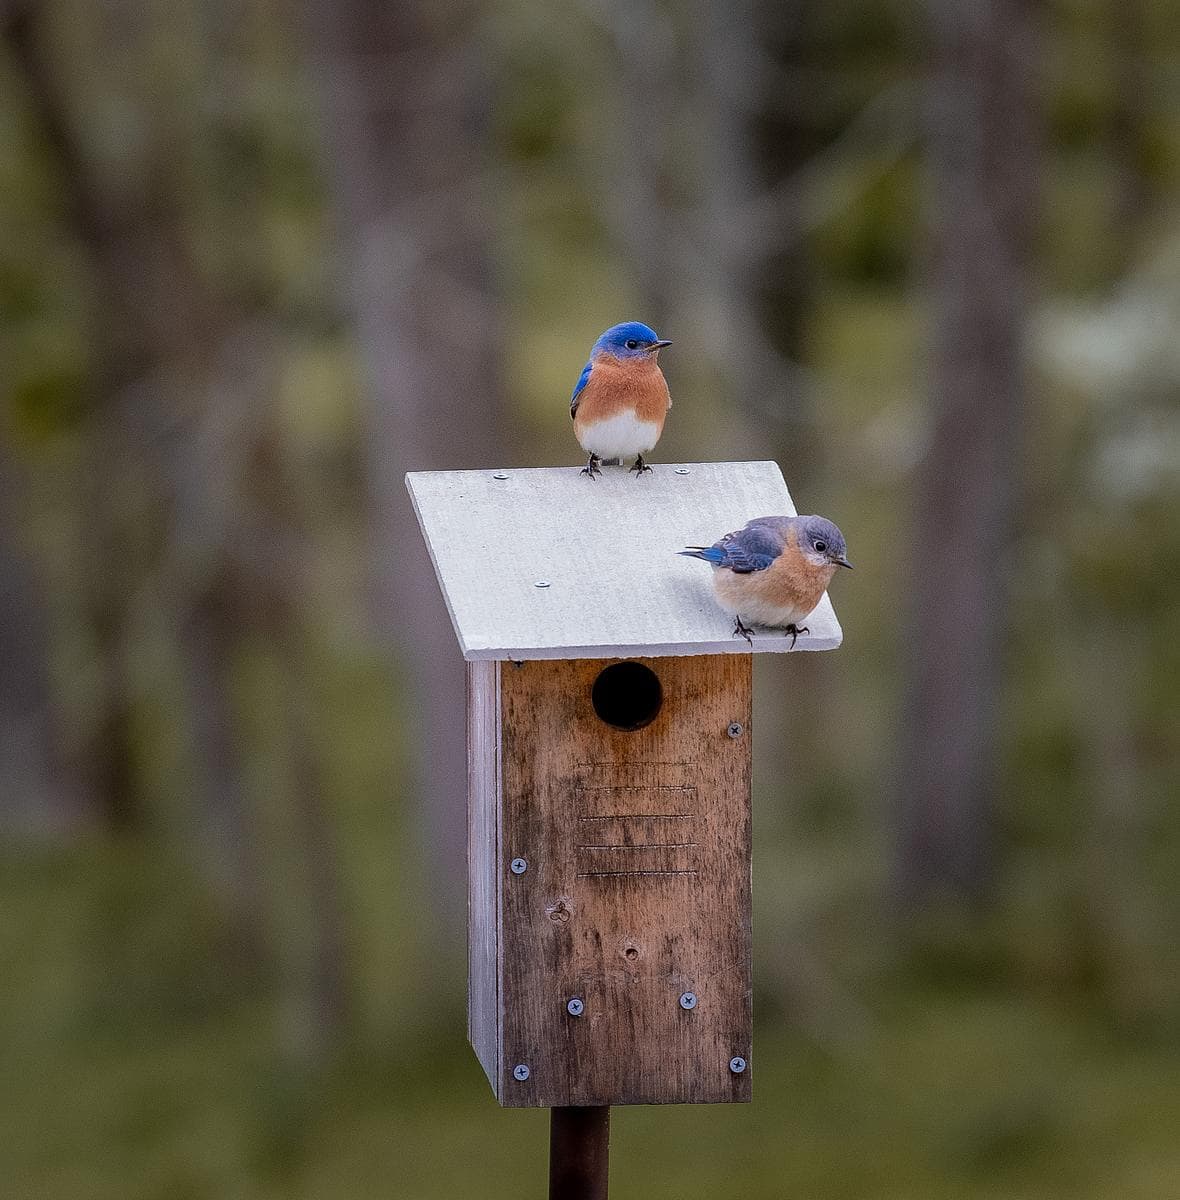 two bluebirds sit on a bird box in a meadow.